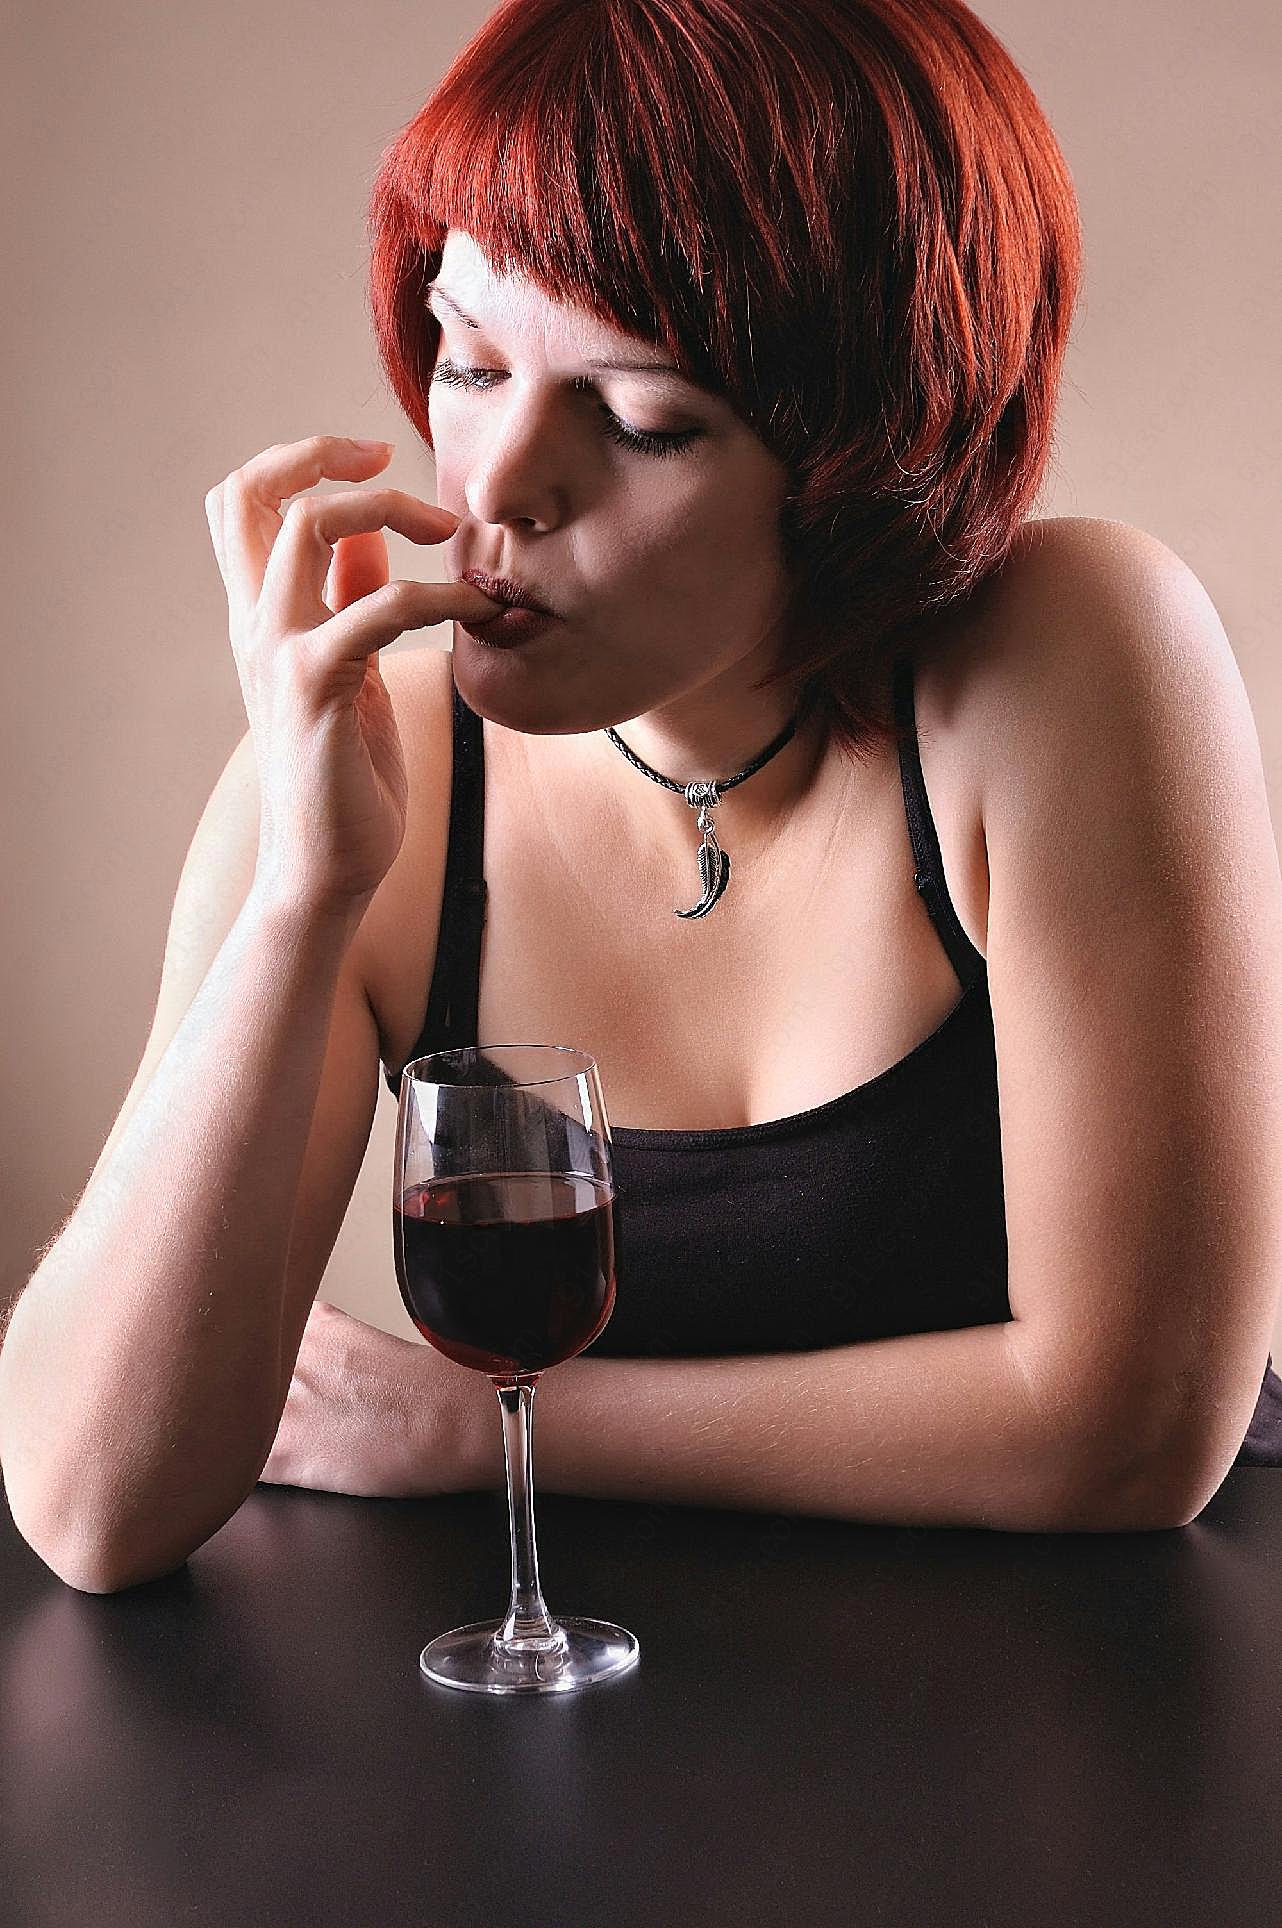 女人独自喝酒伤感图片摄影高清